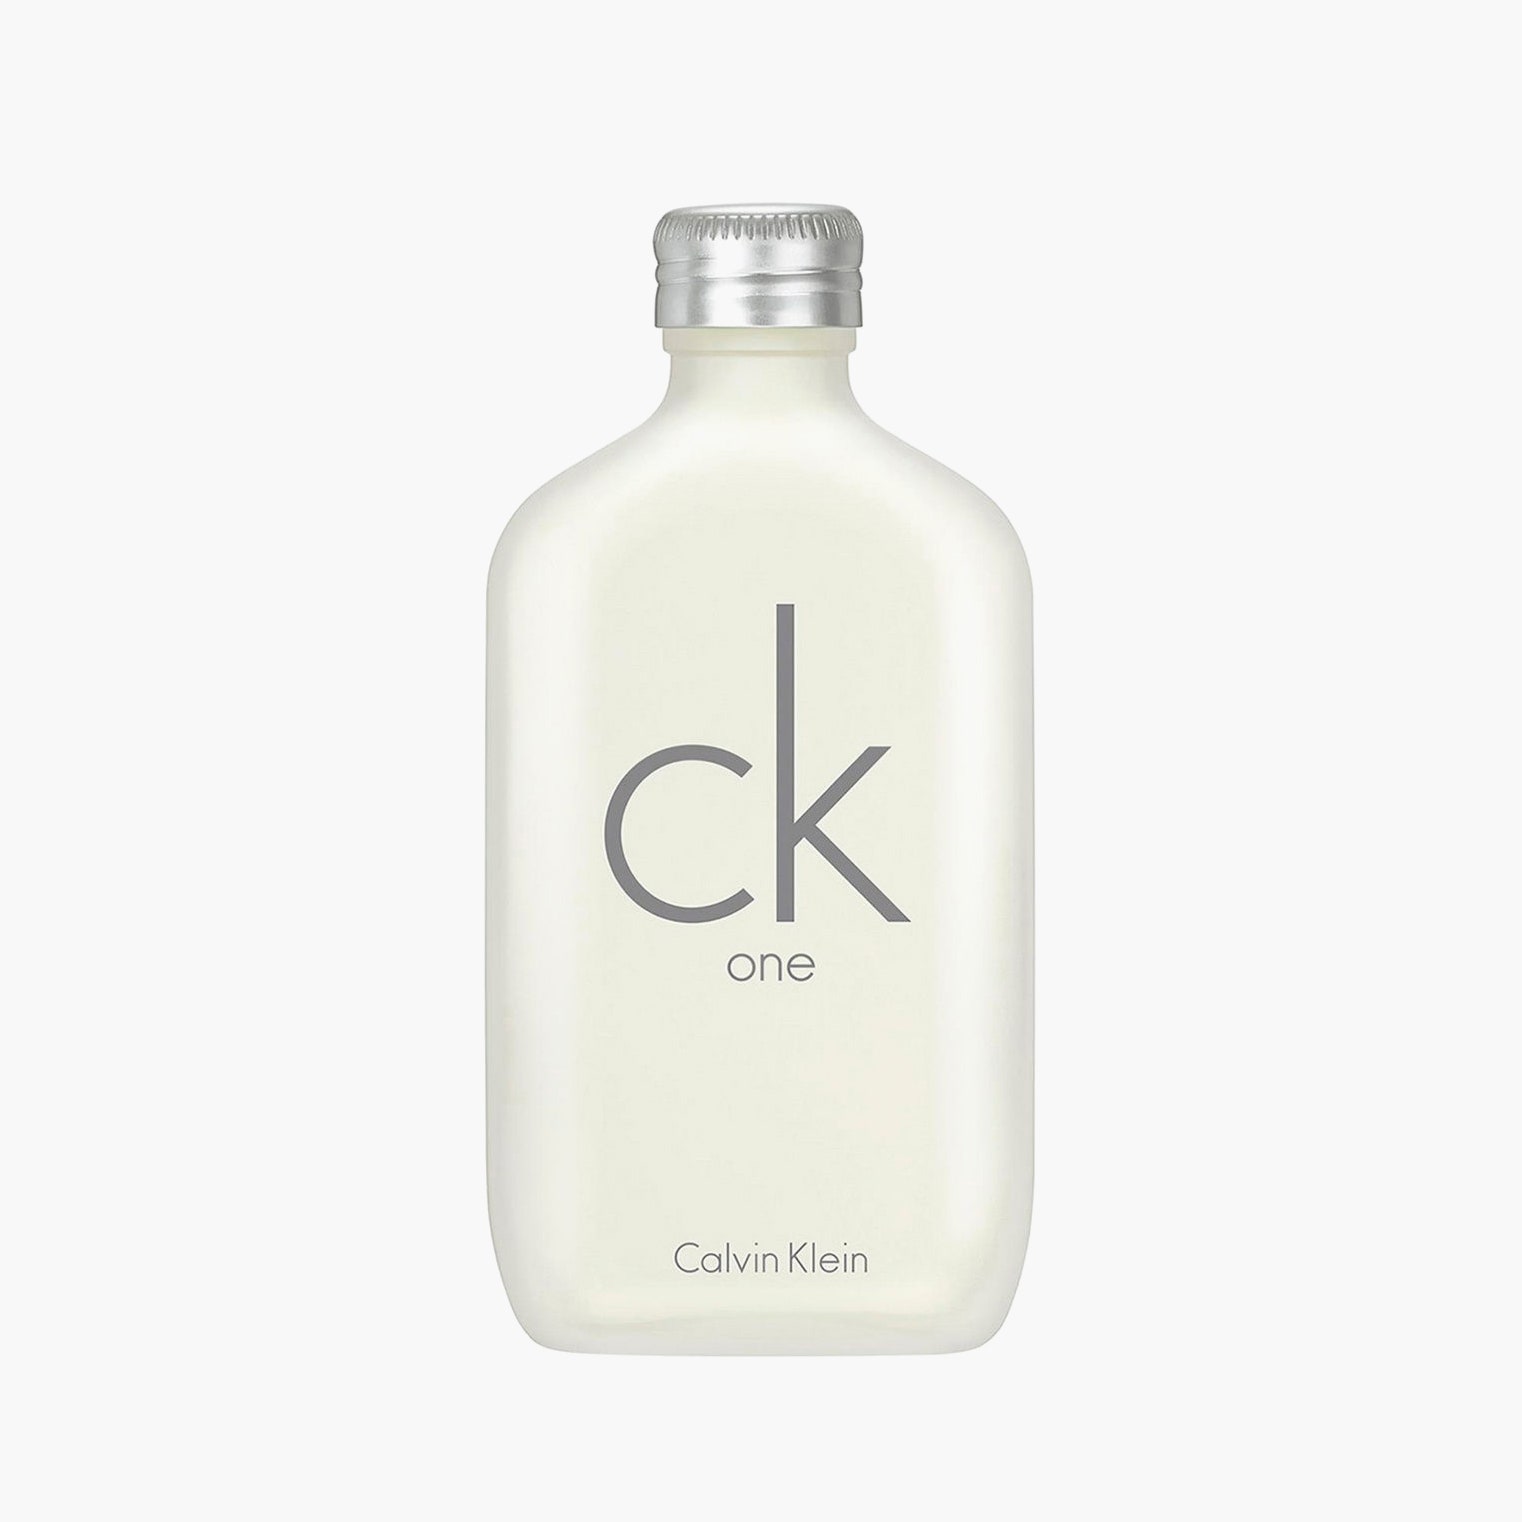 Туалетная вода CK One Calvin Klein 3550 рублей